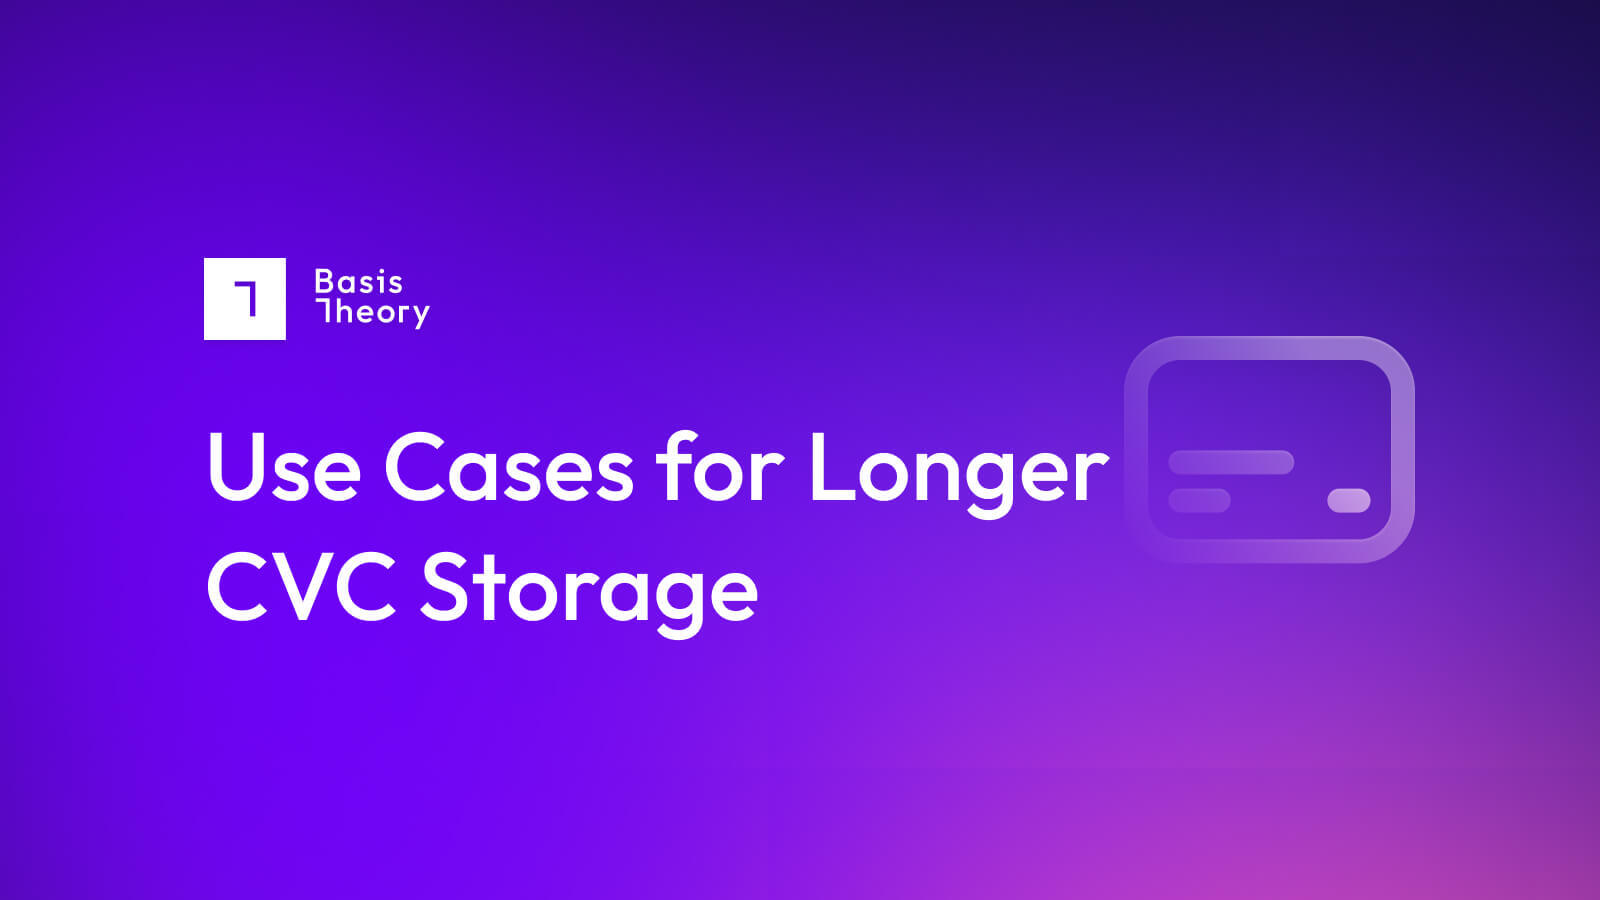 Use Cases for Longer CVC Storage